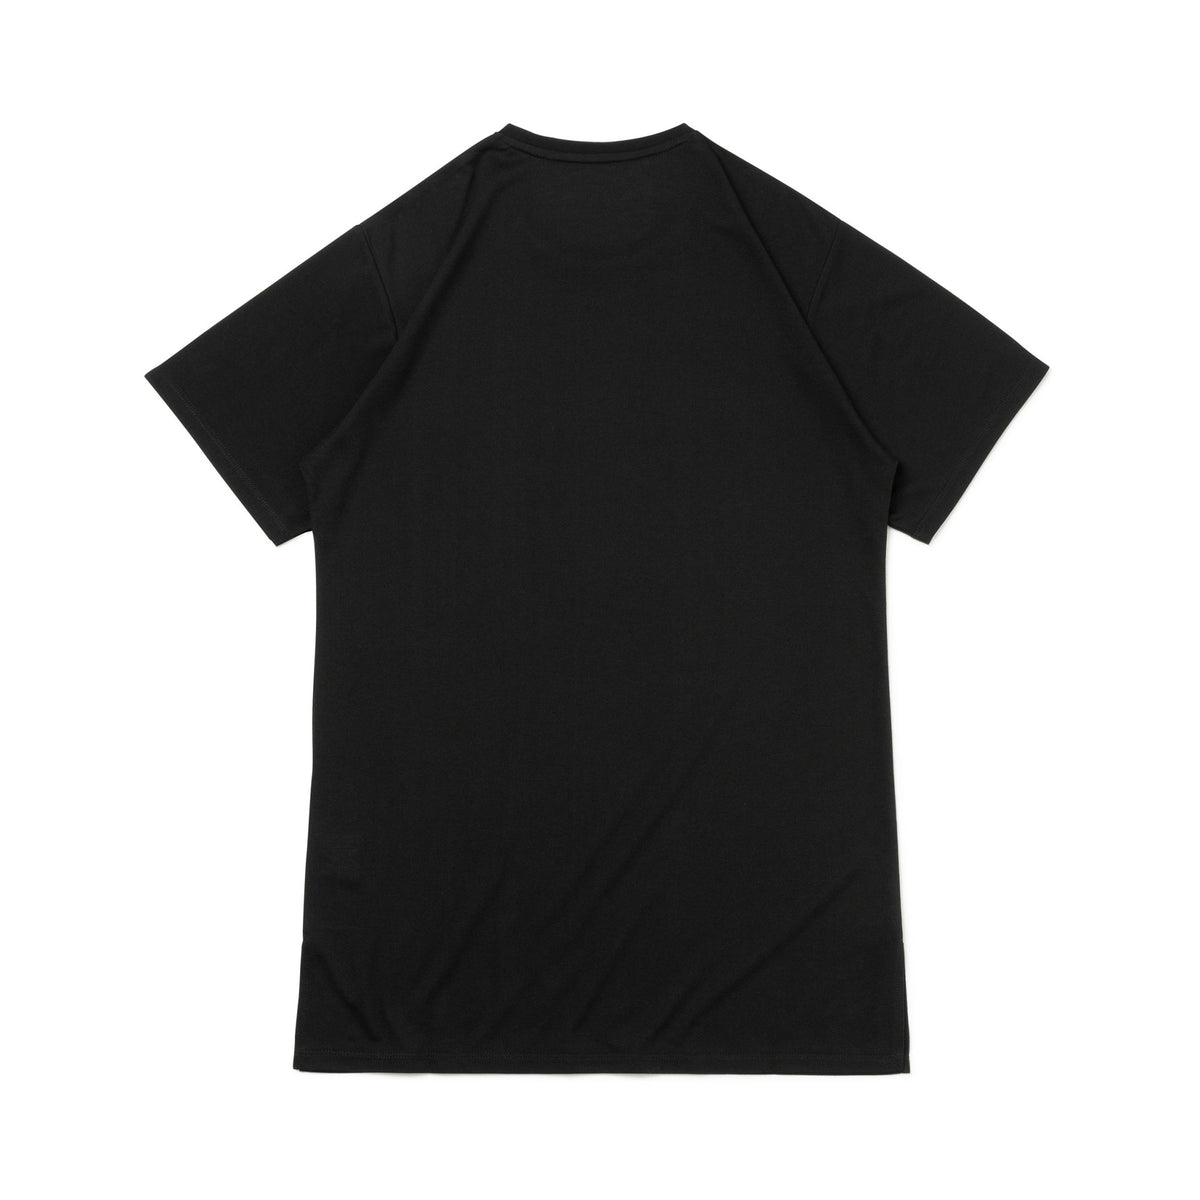 Women's 半袖 ロング Tシャツ ブラック【 Performance Apparel 